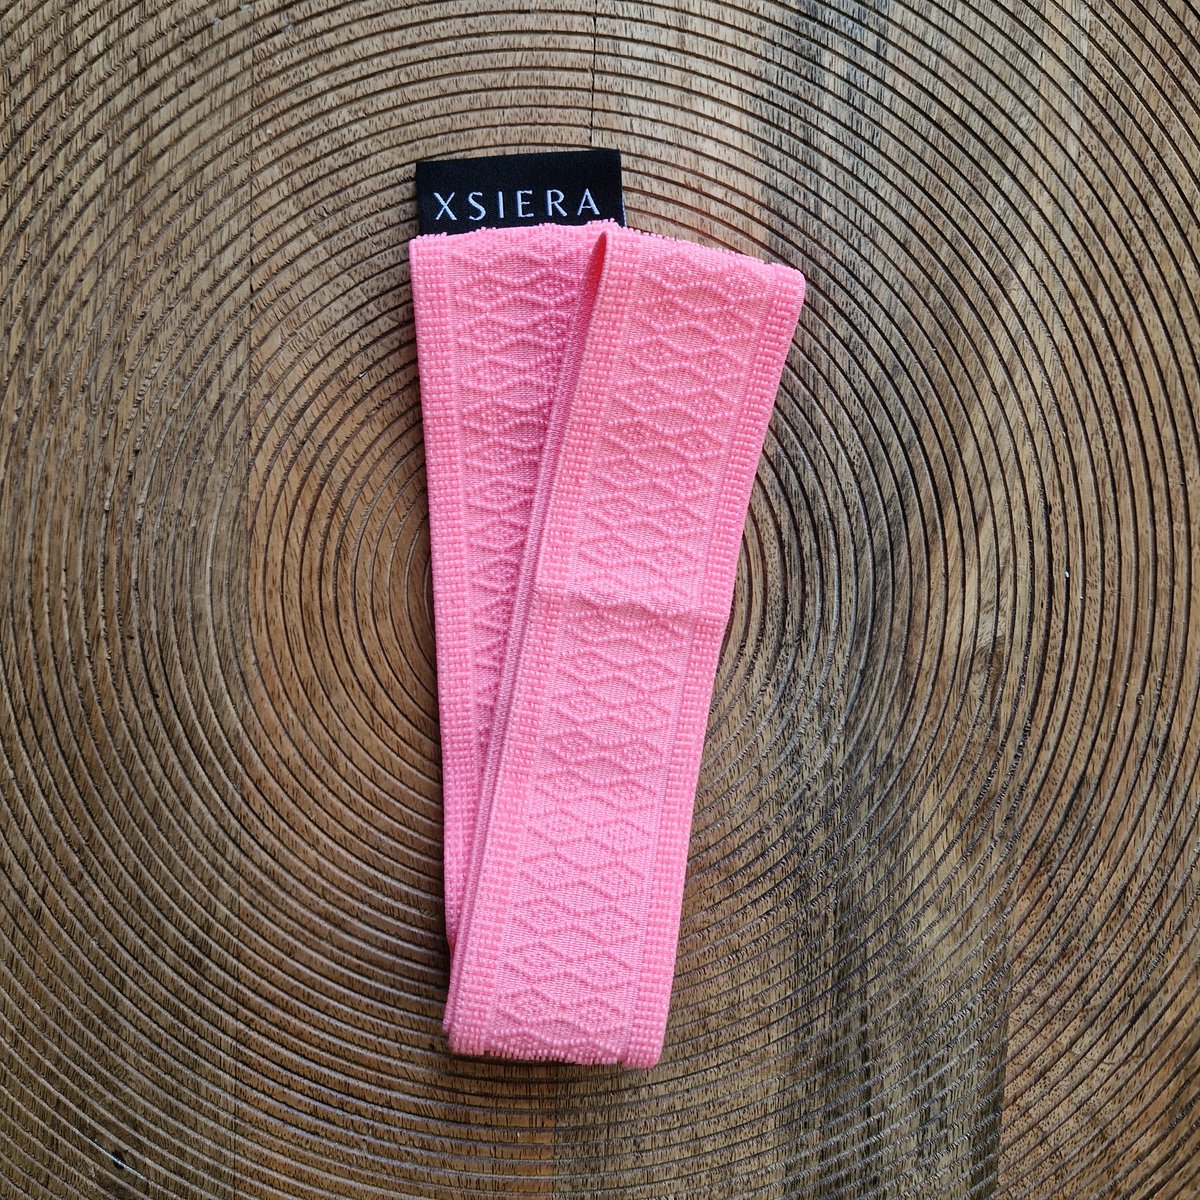 XSIERA - Handdoek elastiek - roze strandbed elastiek - Elastische band strandlaken - Strandknijpers - Strand knijper - Towelband - Towelstrap